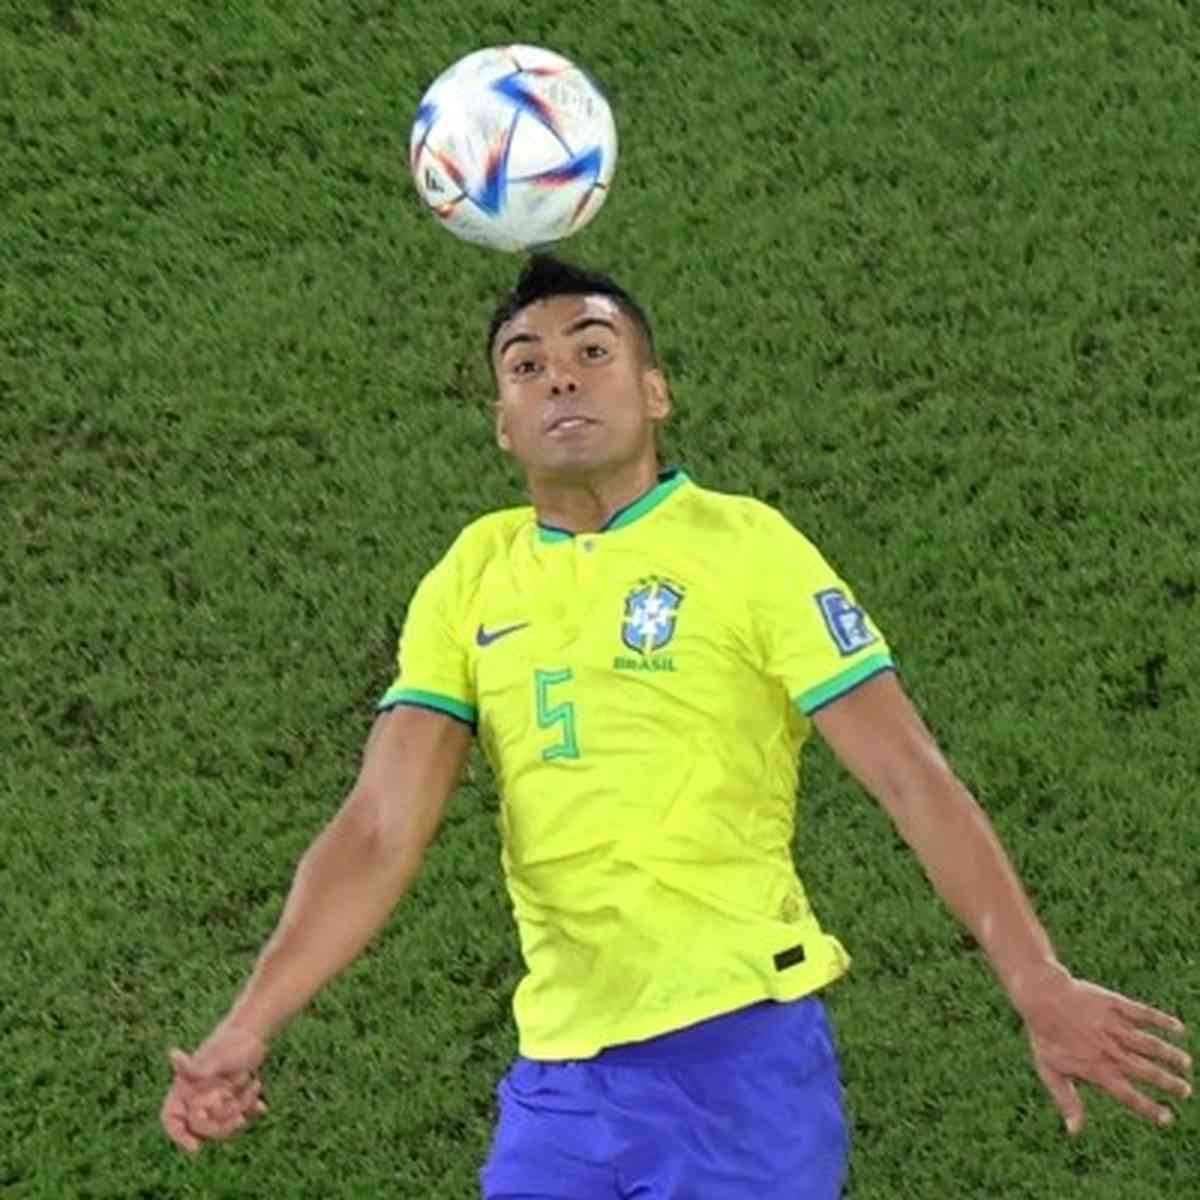 PLACAR escala: a seleção brasileira para a próxima Copa do Mundo - Placar -  O futebol sem barreiras para você